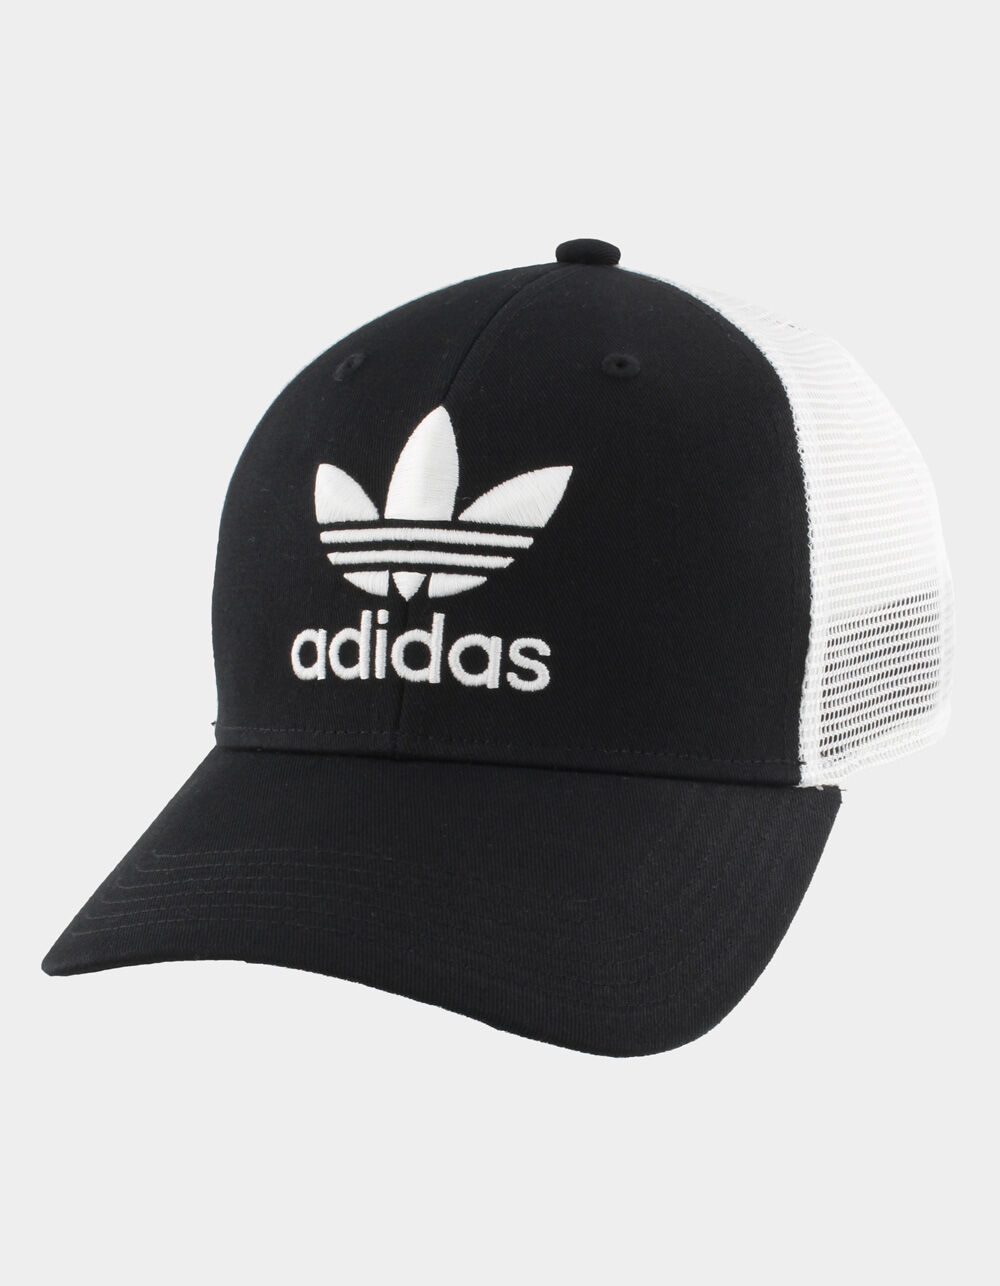 ADIDAS Originals Icon Mens Trucker Hat - BLACK/WHITE | Tillys